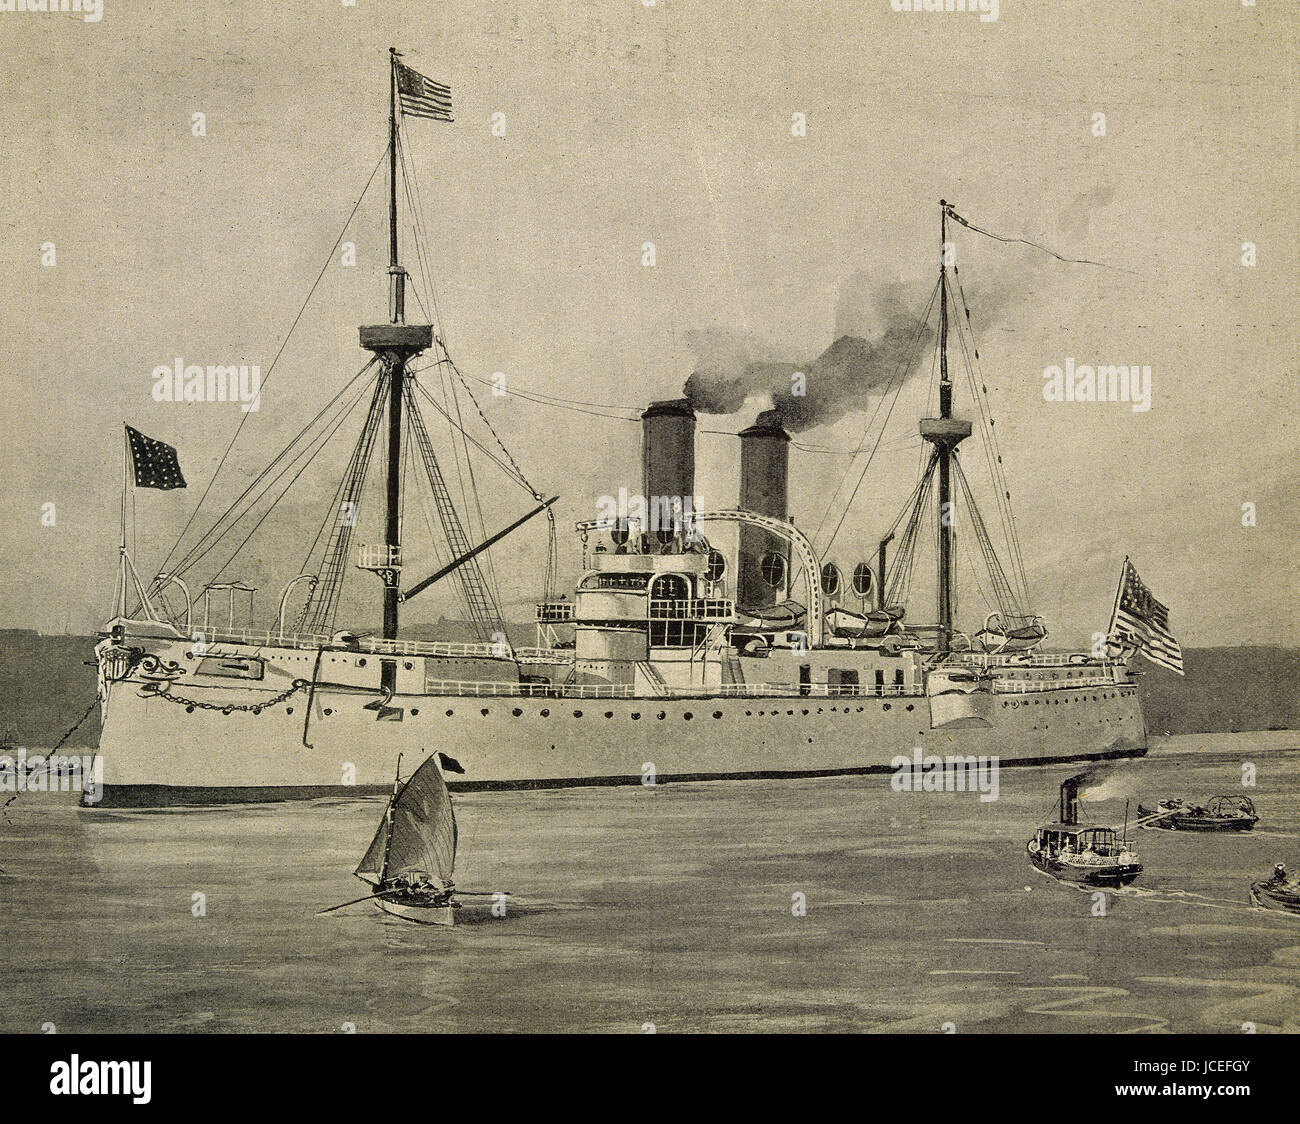 Spanish-amerikanischer Krieg. Die amerikanische Marine-Schiff USS Maine (ACR-1) verankert im Hafen von Havanna. Am 15. Februar 1898 explodierte, dienen der Vorwand in die Vereinigten Staaten, den Krieg nach Spanien erklären. Gravur. Stockfoto